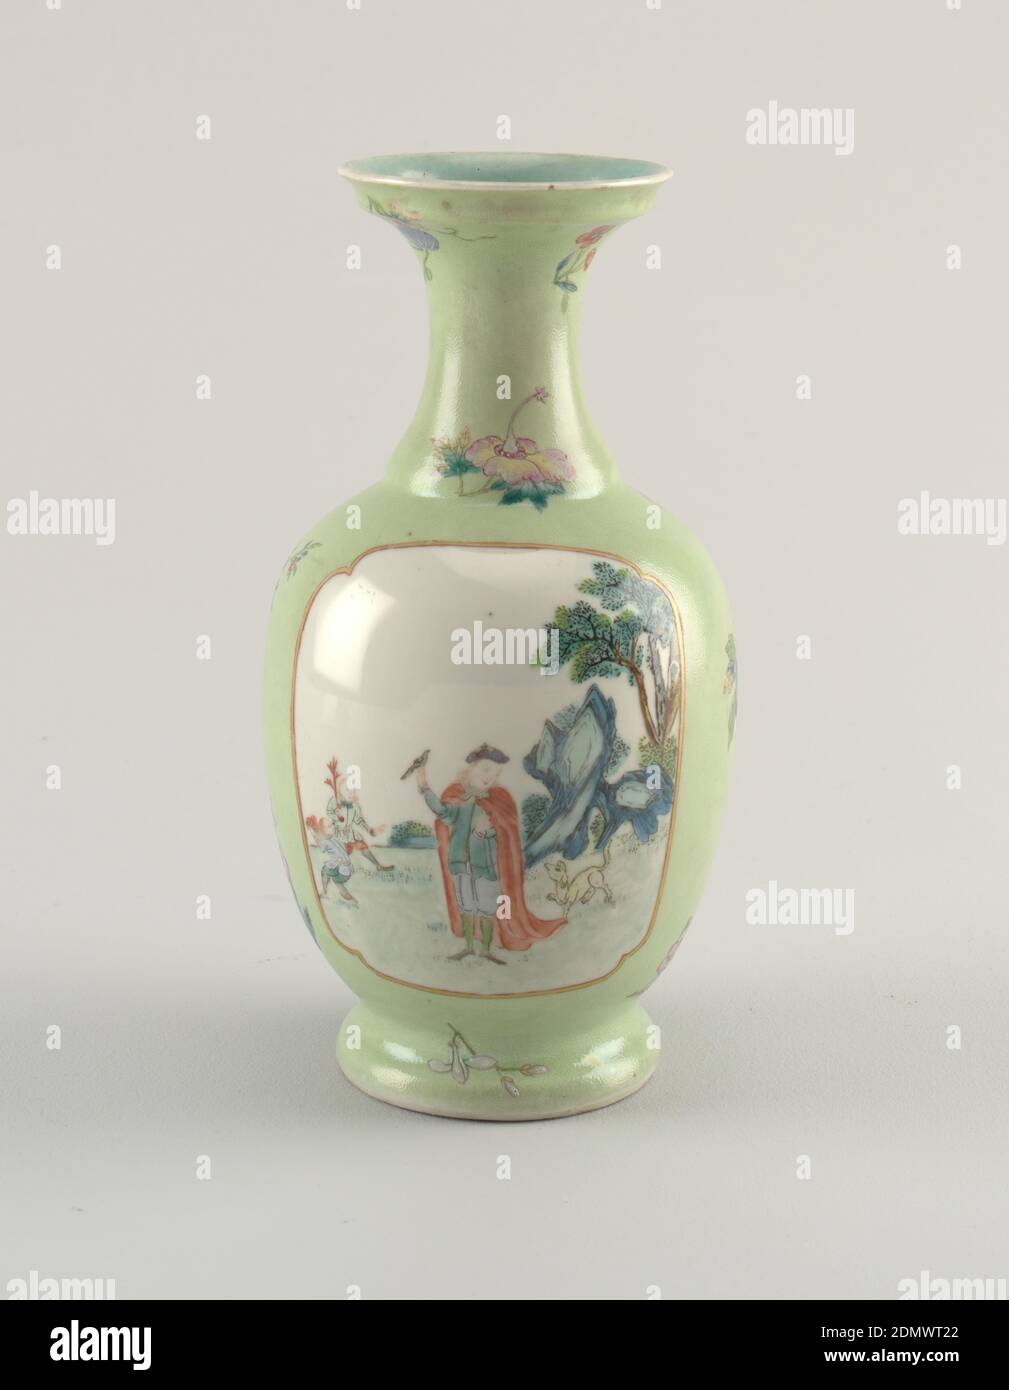 Vaso, porcellana smaltata, vaso in porcellana verde pallido che raffigura una scena all'aperto con due personaggi da passeggio., Cina, 1736–95, ceramica, arti decorative, vaso Foto Stock